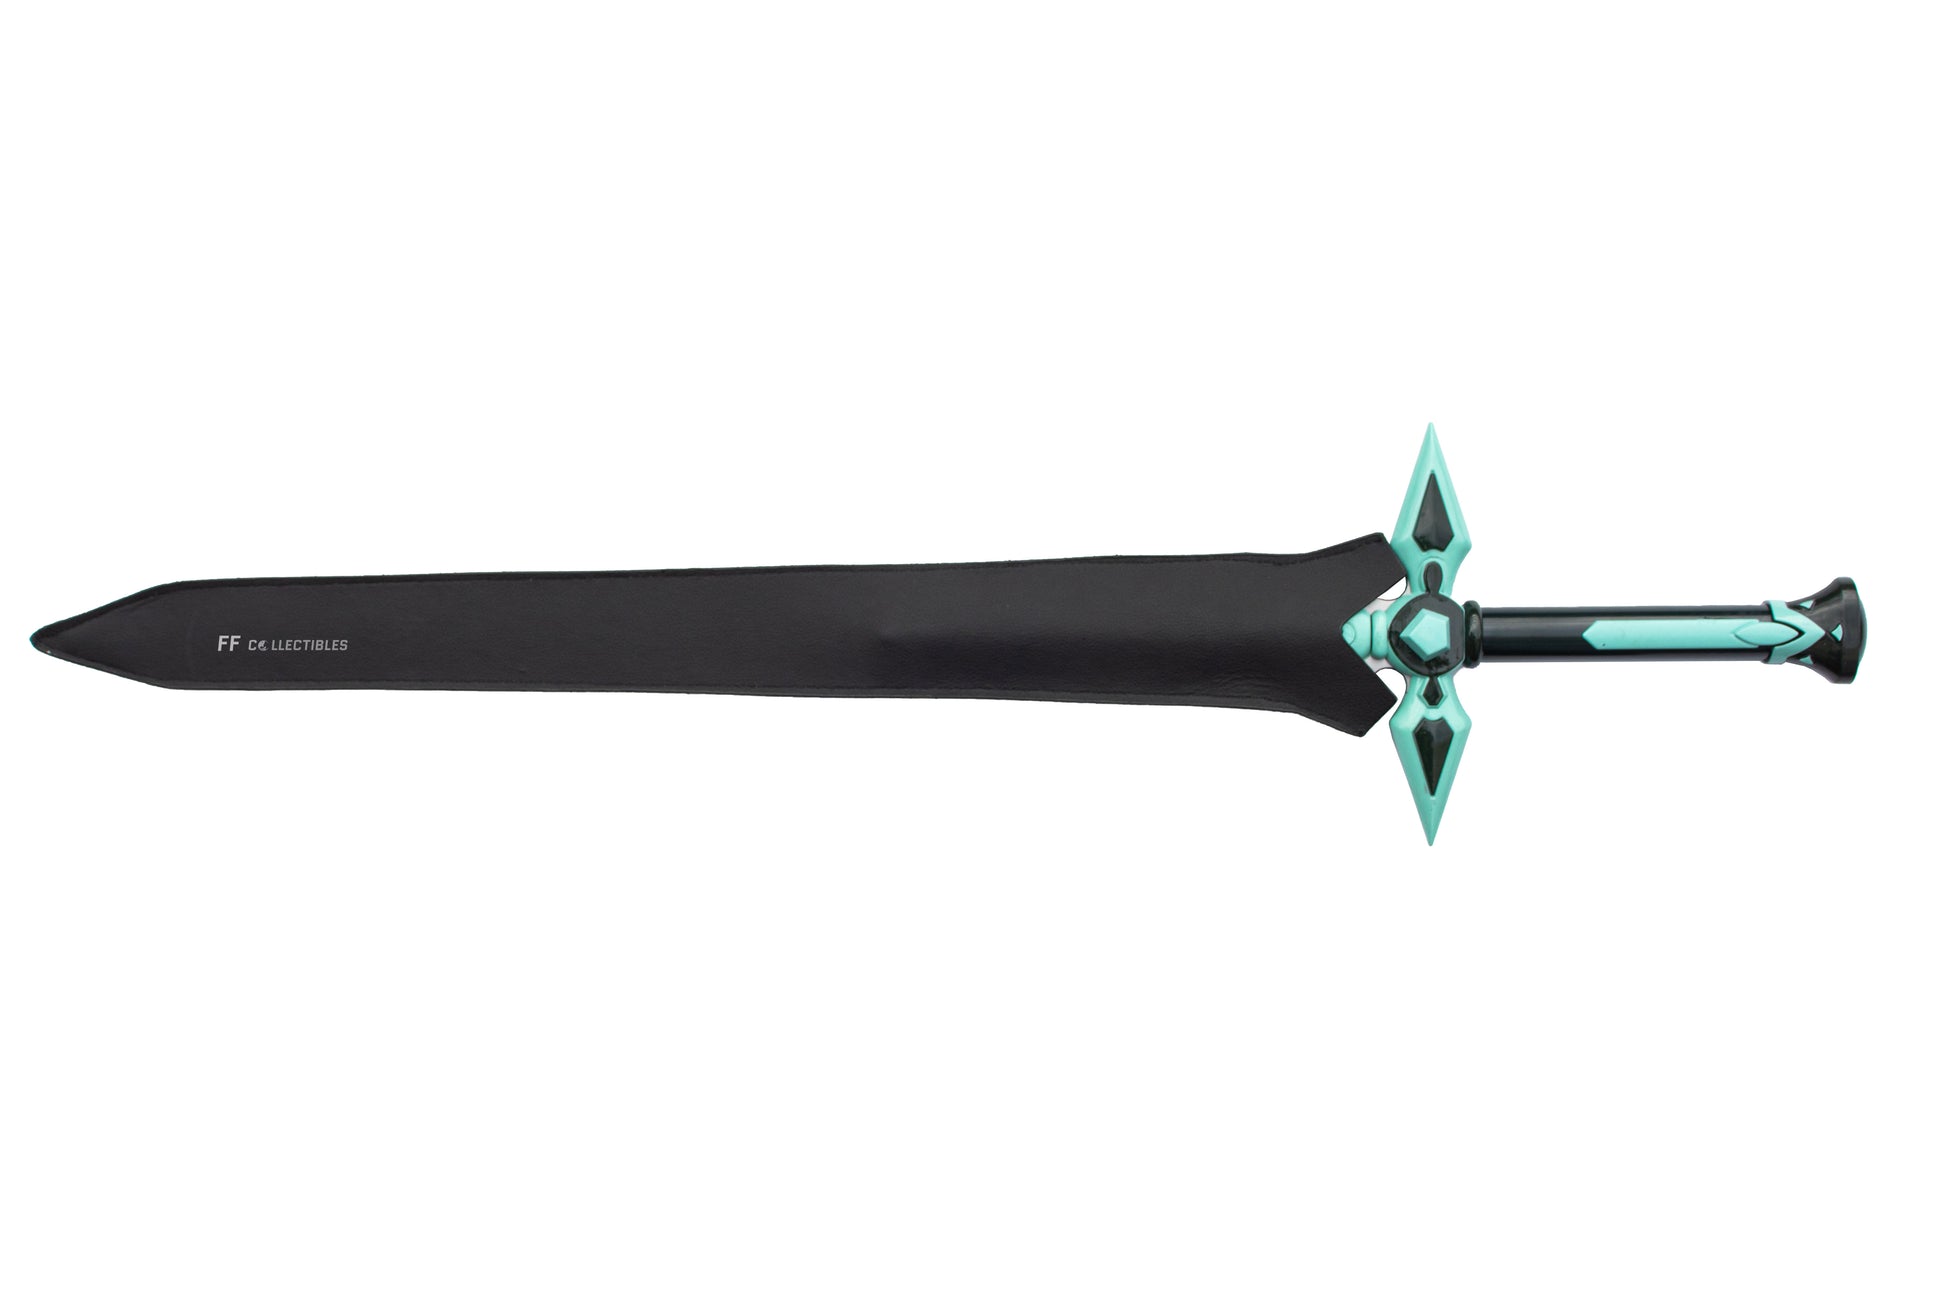  Top Swords Sword Art Online Kirito Sword Set